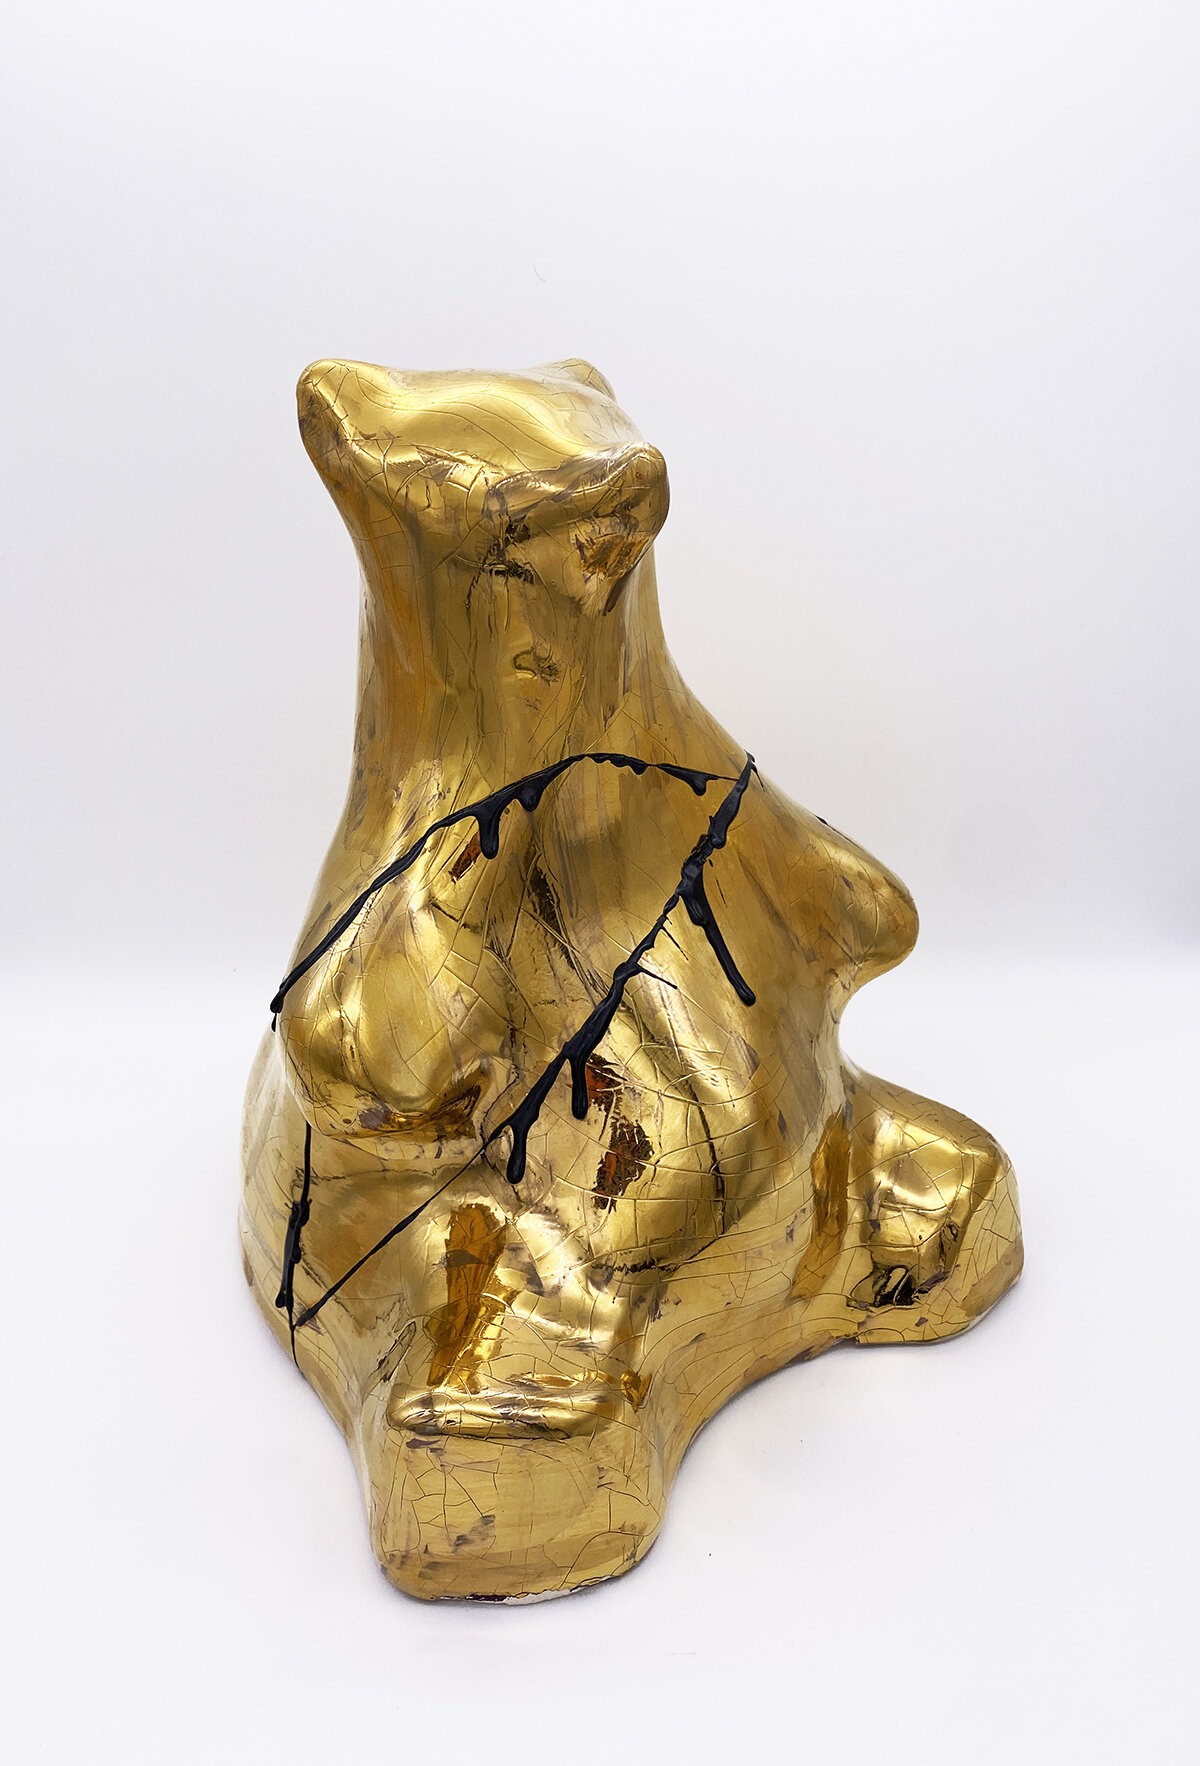 GOLD KINTSUGI BURR, Glazed Ceramic. H31 x W24 x D24cm